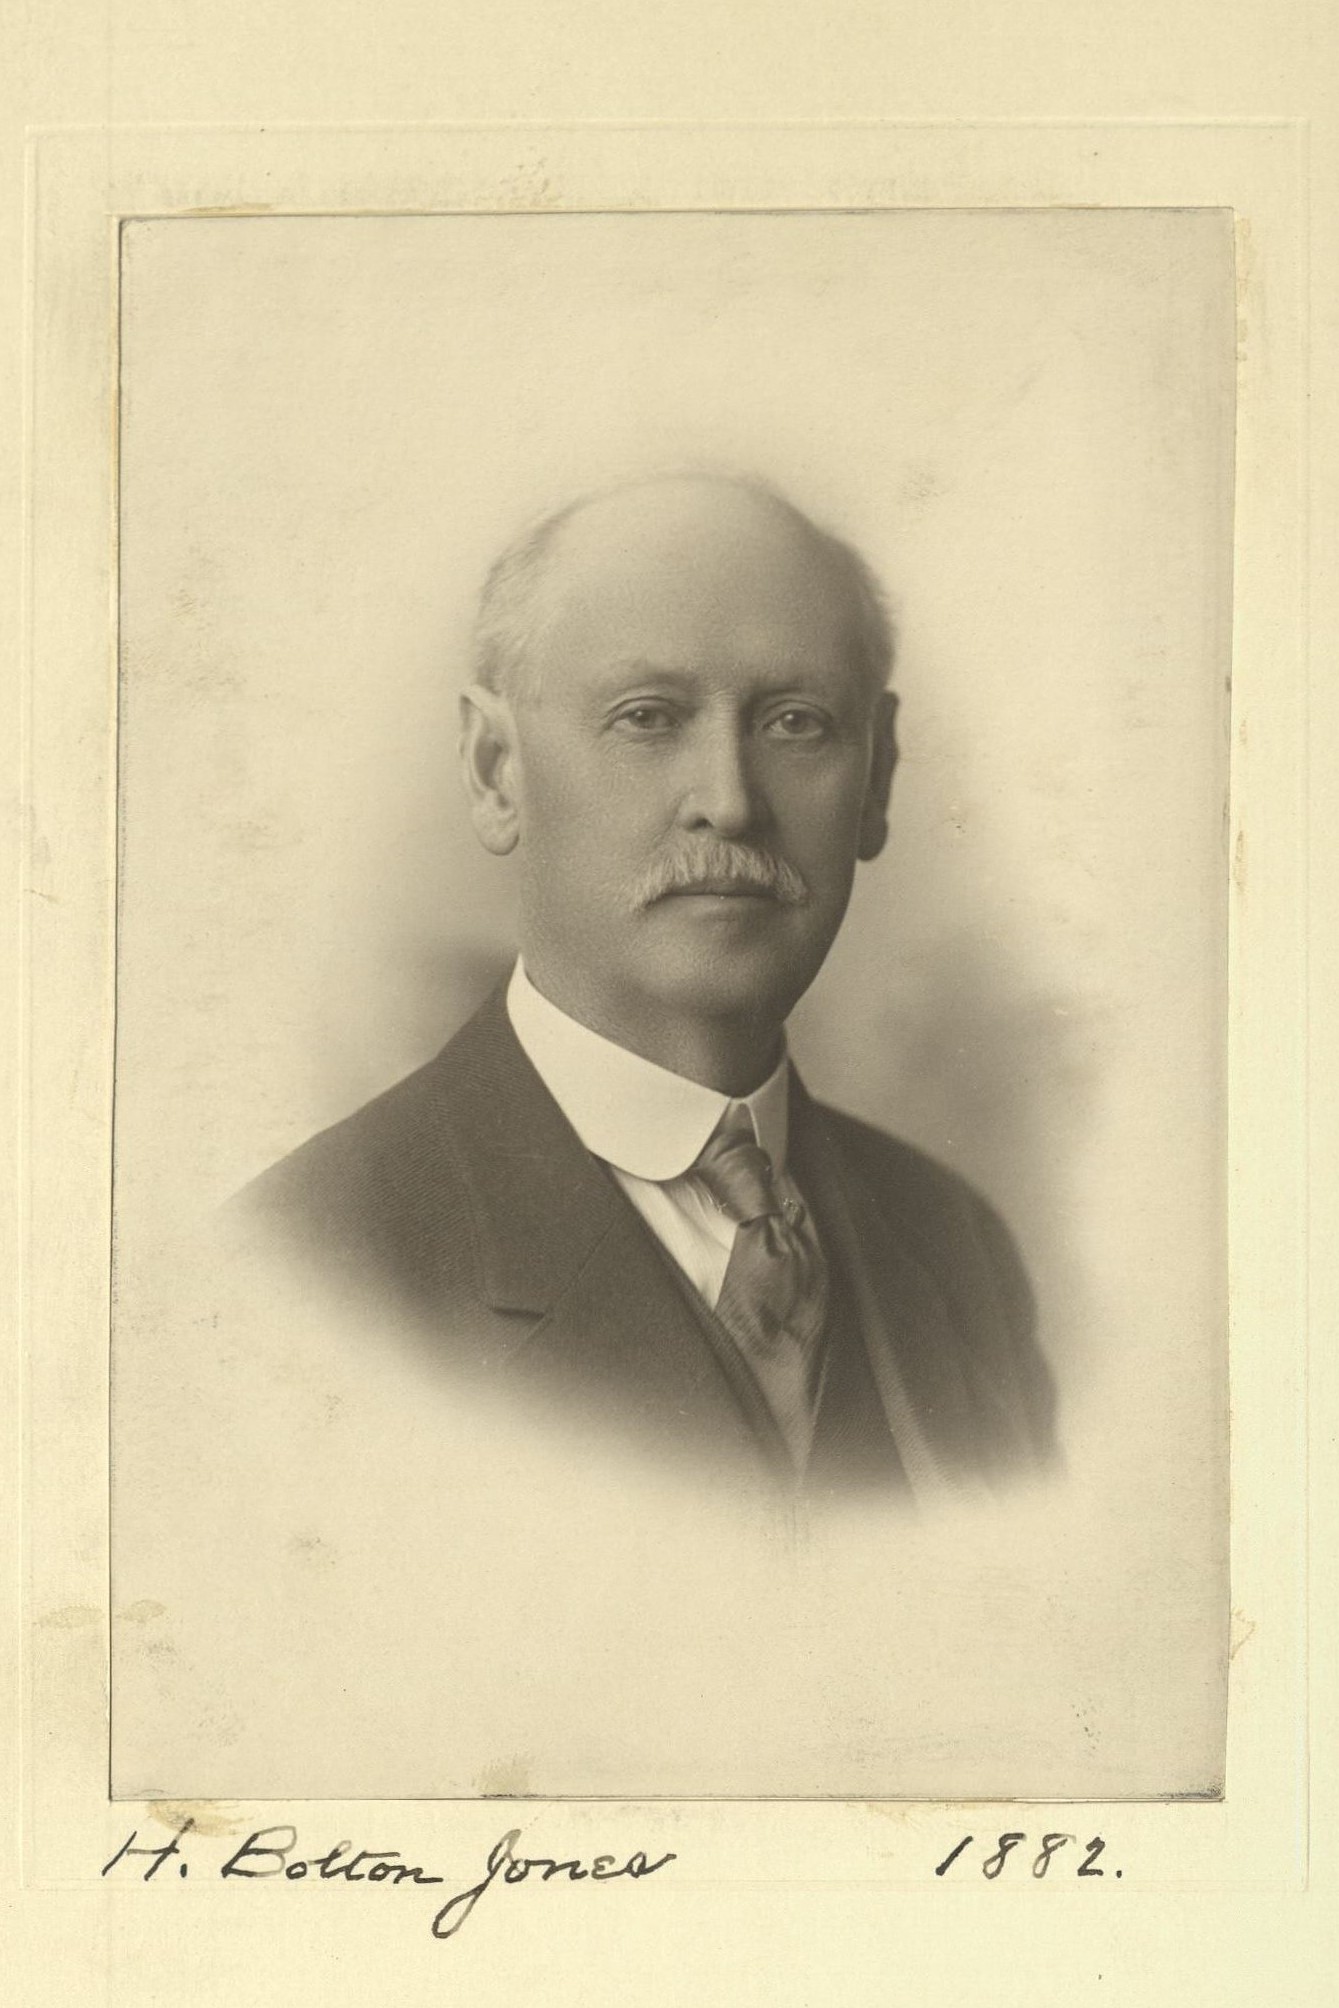 Member portrait of H. Bolton Jones